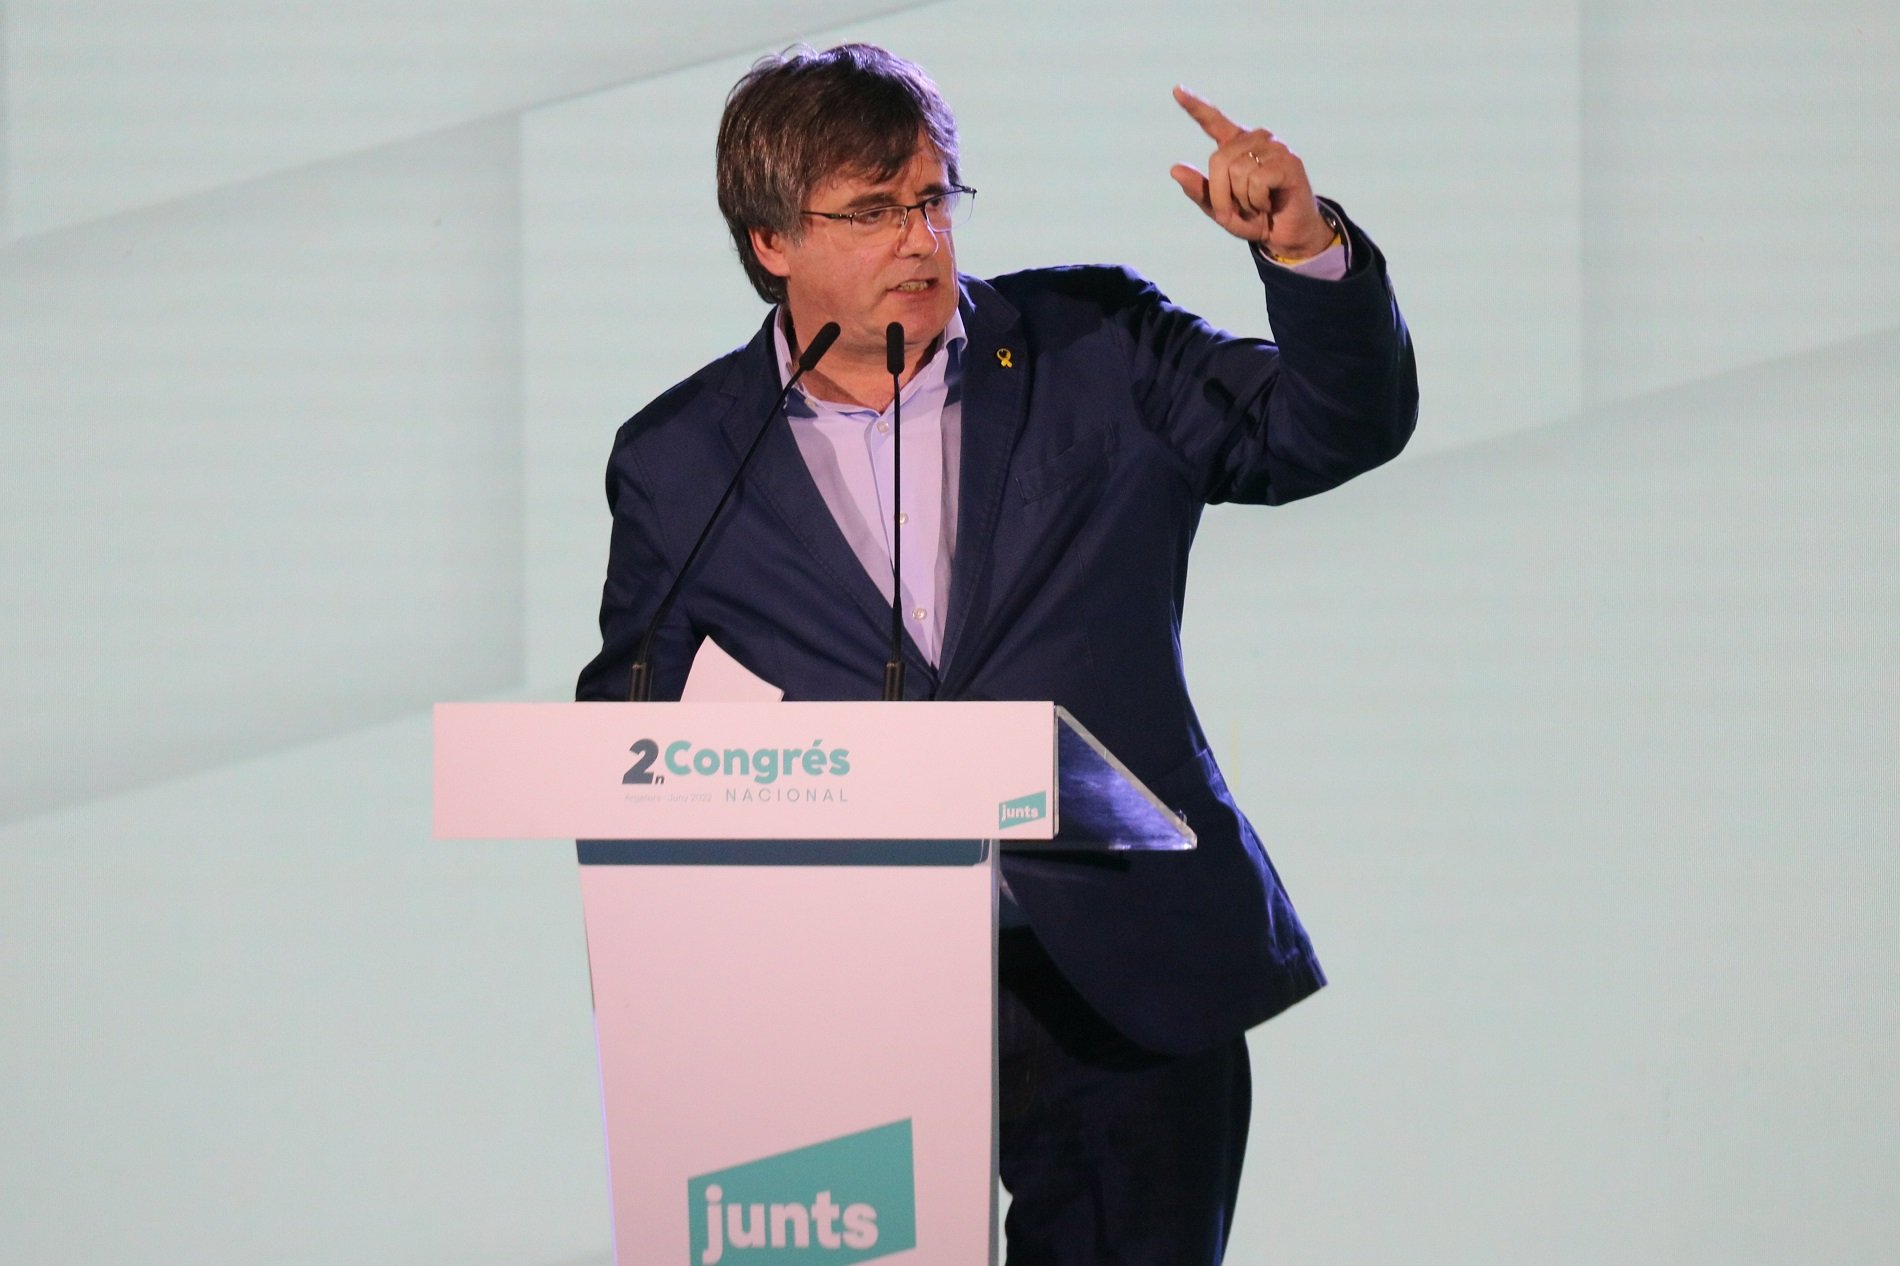 President Carles Puigdemont congres nacional JxCat ACN